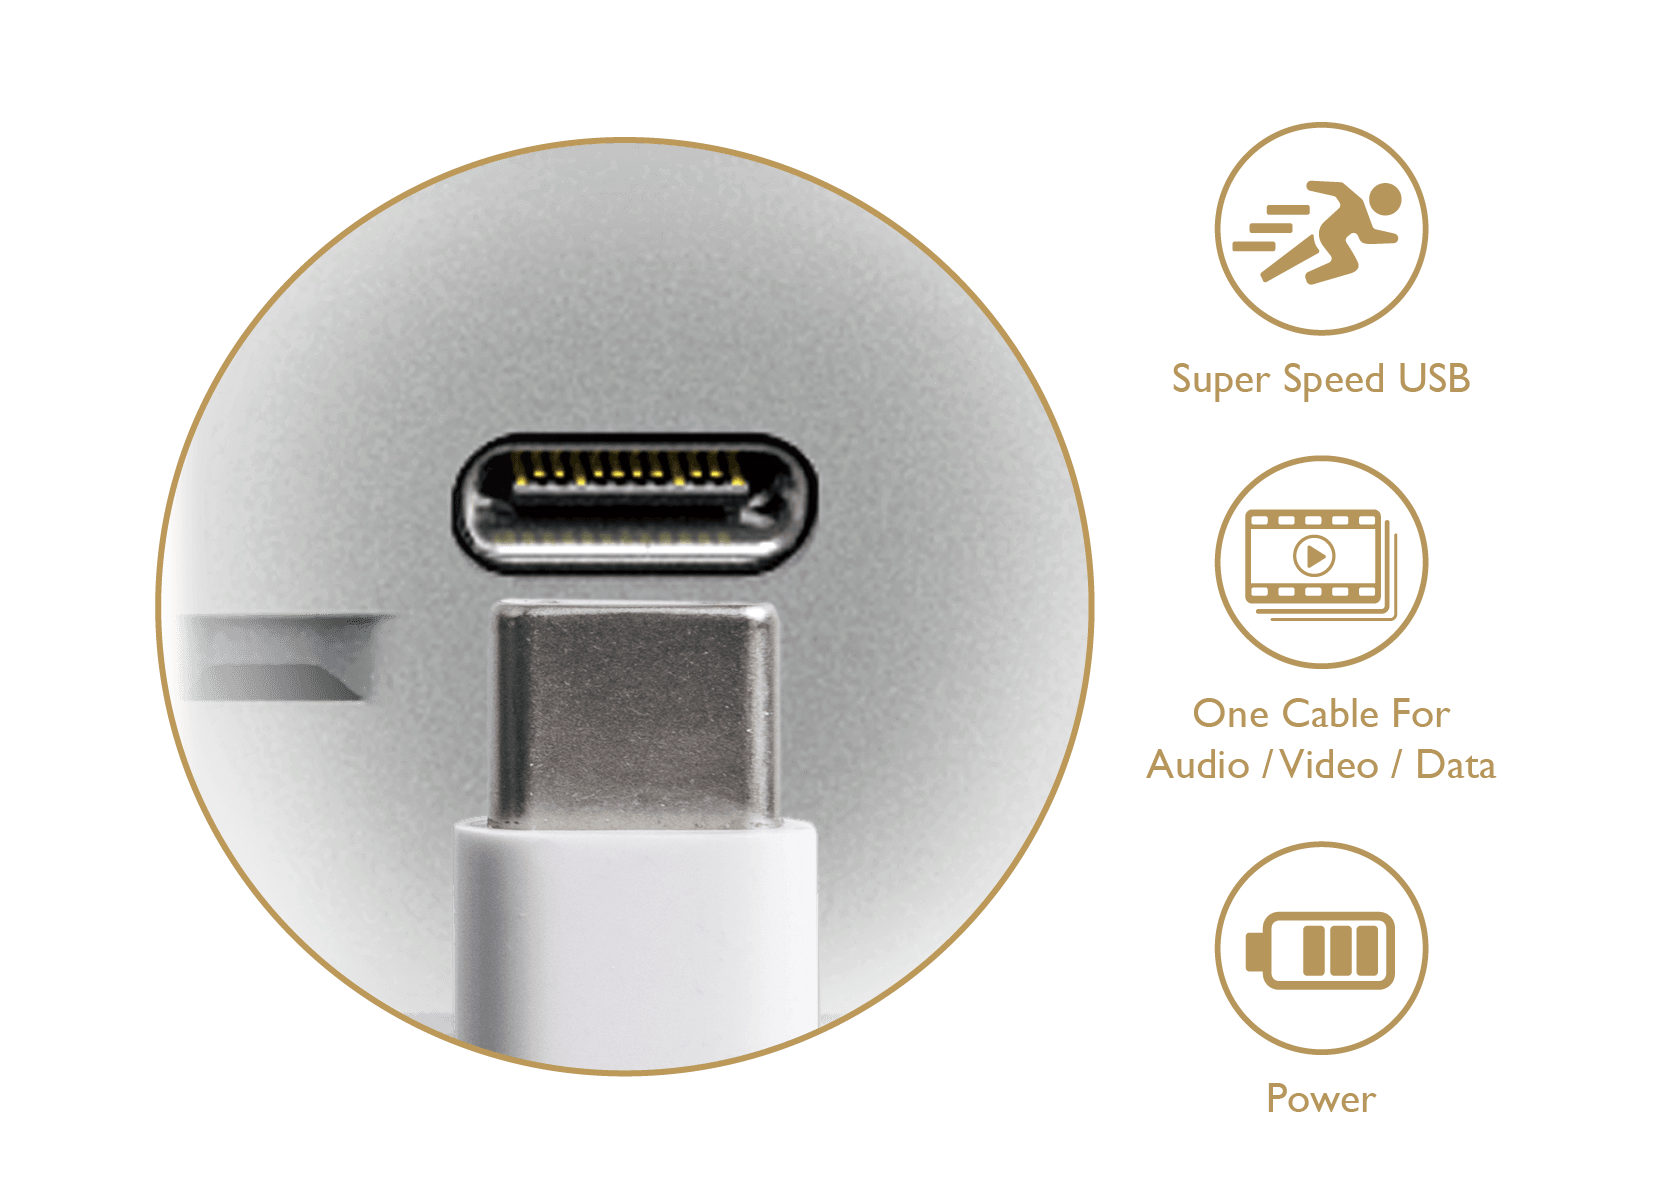 Superschnelle Übertragung von Daten und Stromversorgung zusätzlicher Peripherie dank USB-C.